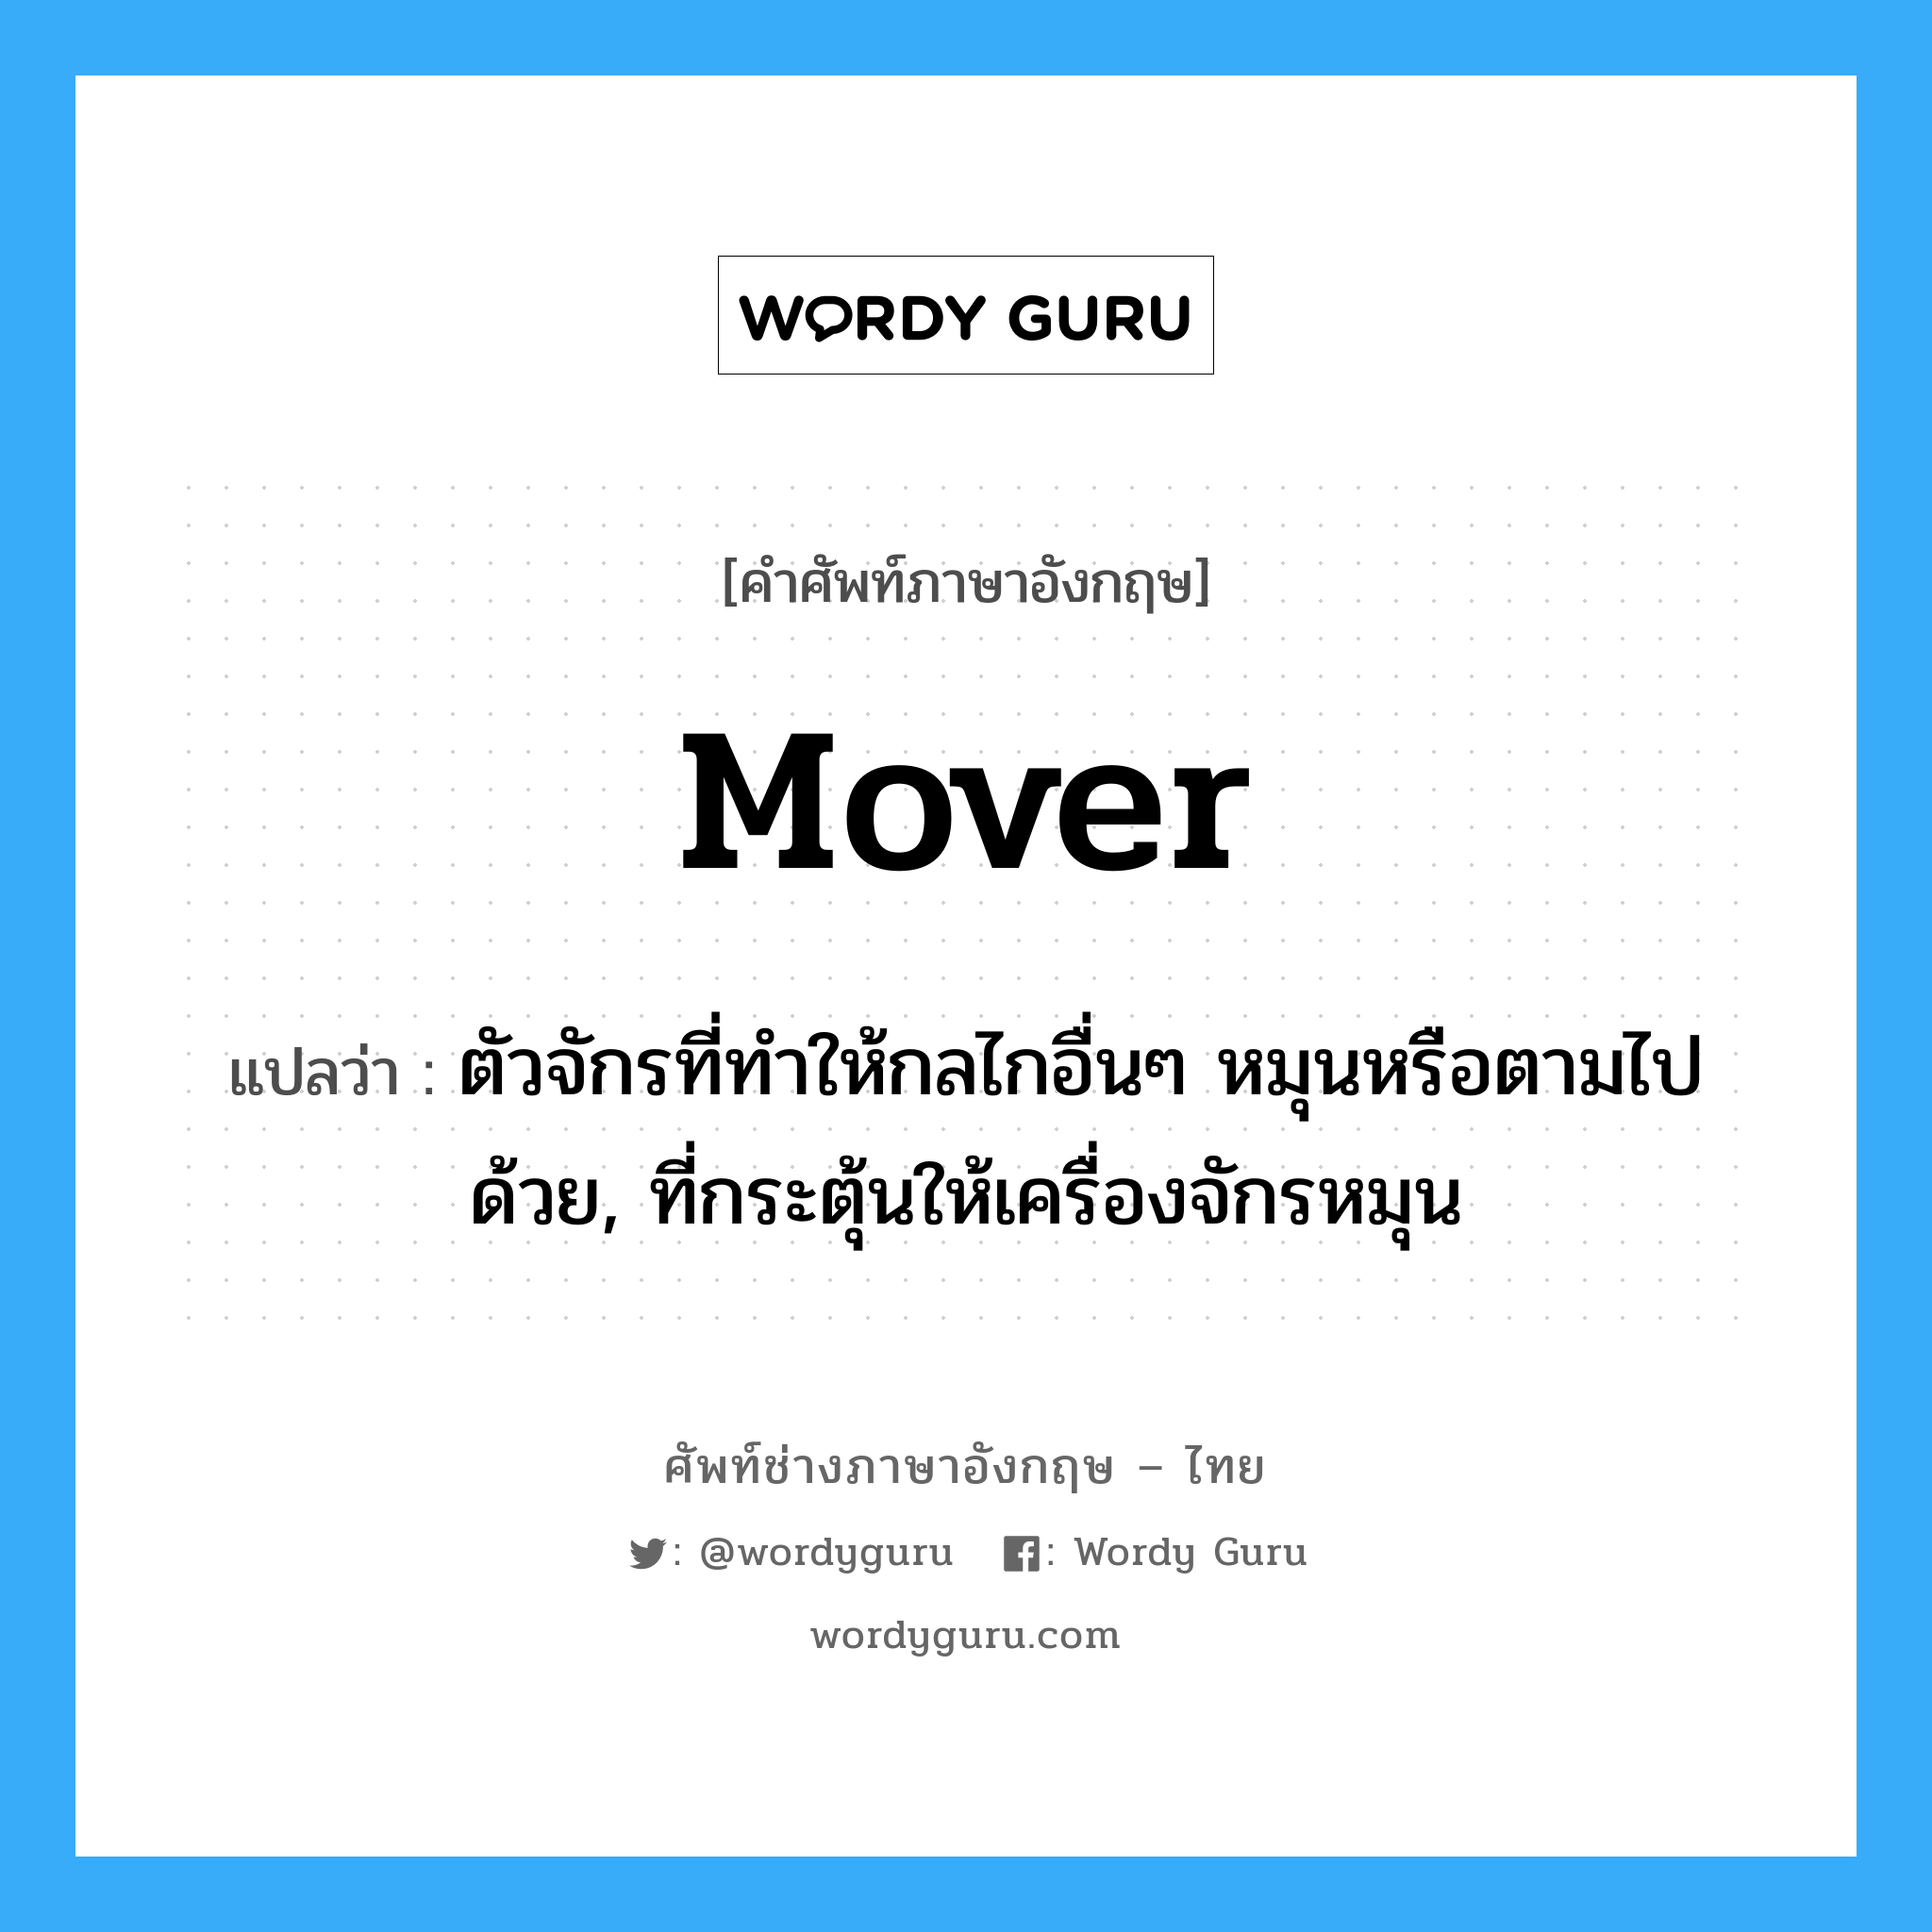 mover แปลว่า?, คำศัพท์ช่างภาษาอังกฤษ - ไทย mover คำศัพท์ภาษาอังกฤษ mover แปลว่า ตัวจักรที่ทำให้กลไกอื่นๆ หมุนหรือตามไปด้วย, ที่กระตุ้นให้เครื่องจักรหมุน